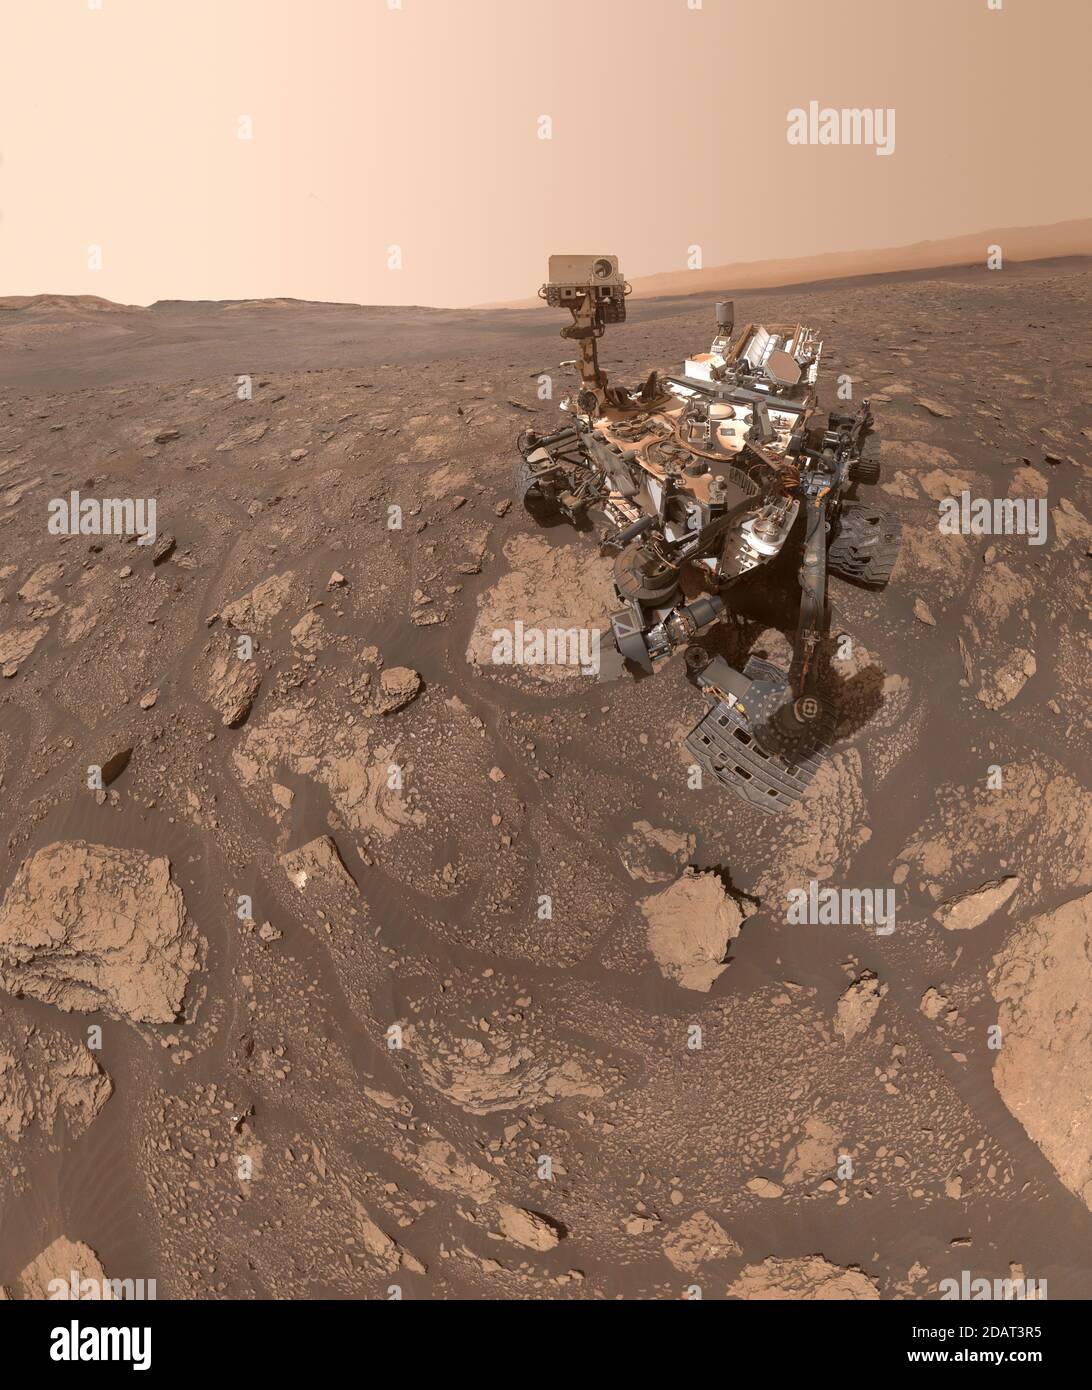 MARS - 12. November 2020 - EIN Selbstporträt der NASA Curiosity Mars Rover nahm dieses Selfie an einem Ort auf Spitzname "Mary Anning" nach einem 19. Jahrhundert Stockfoto